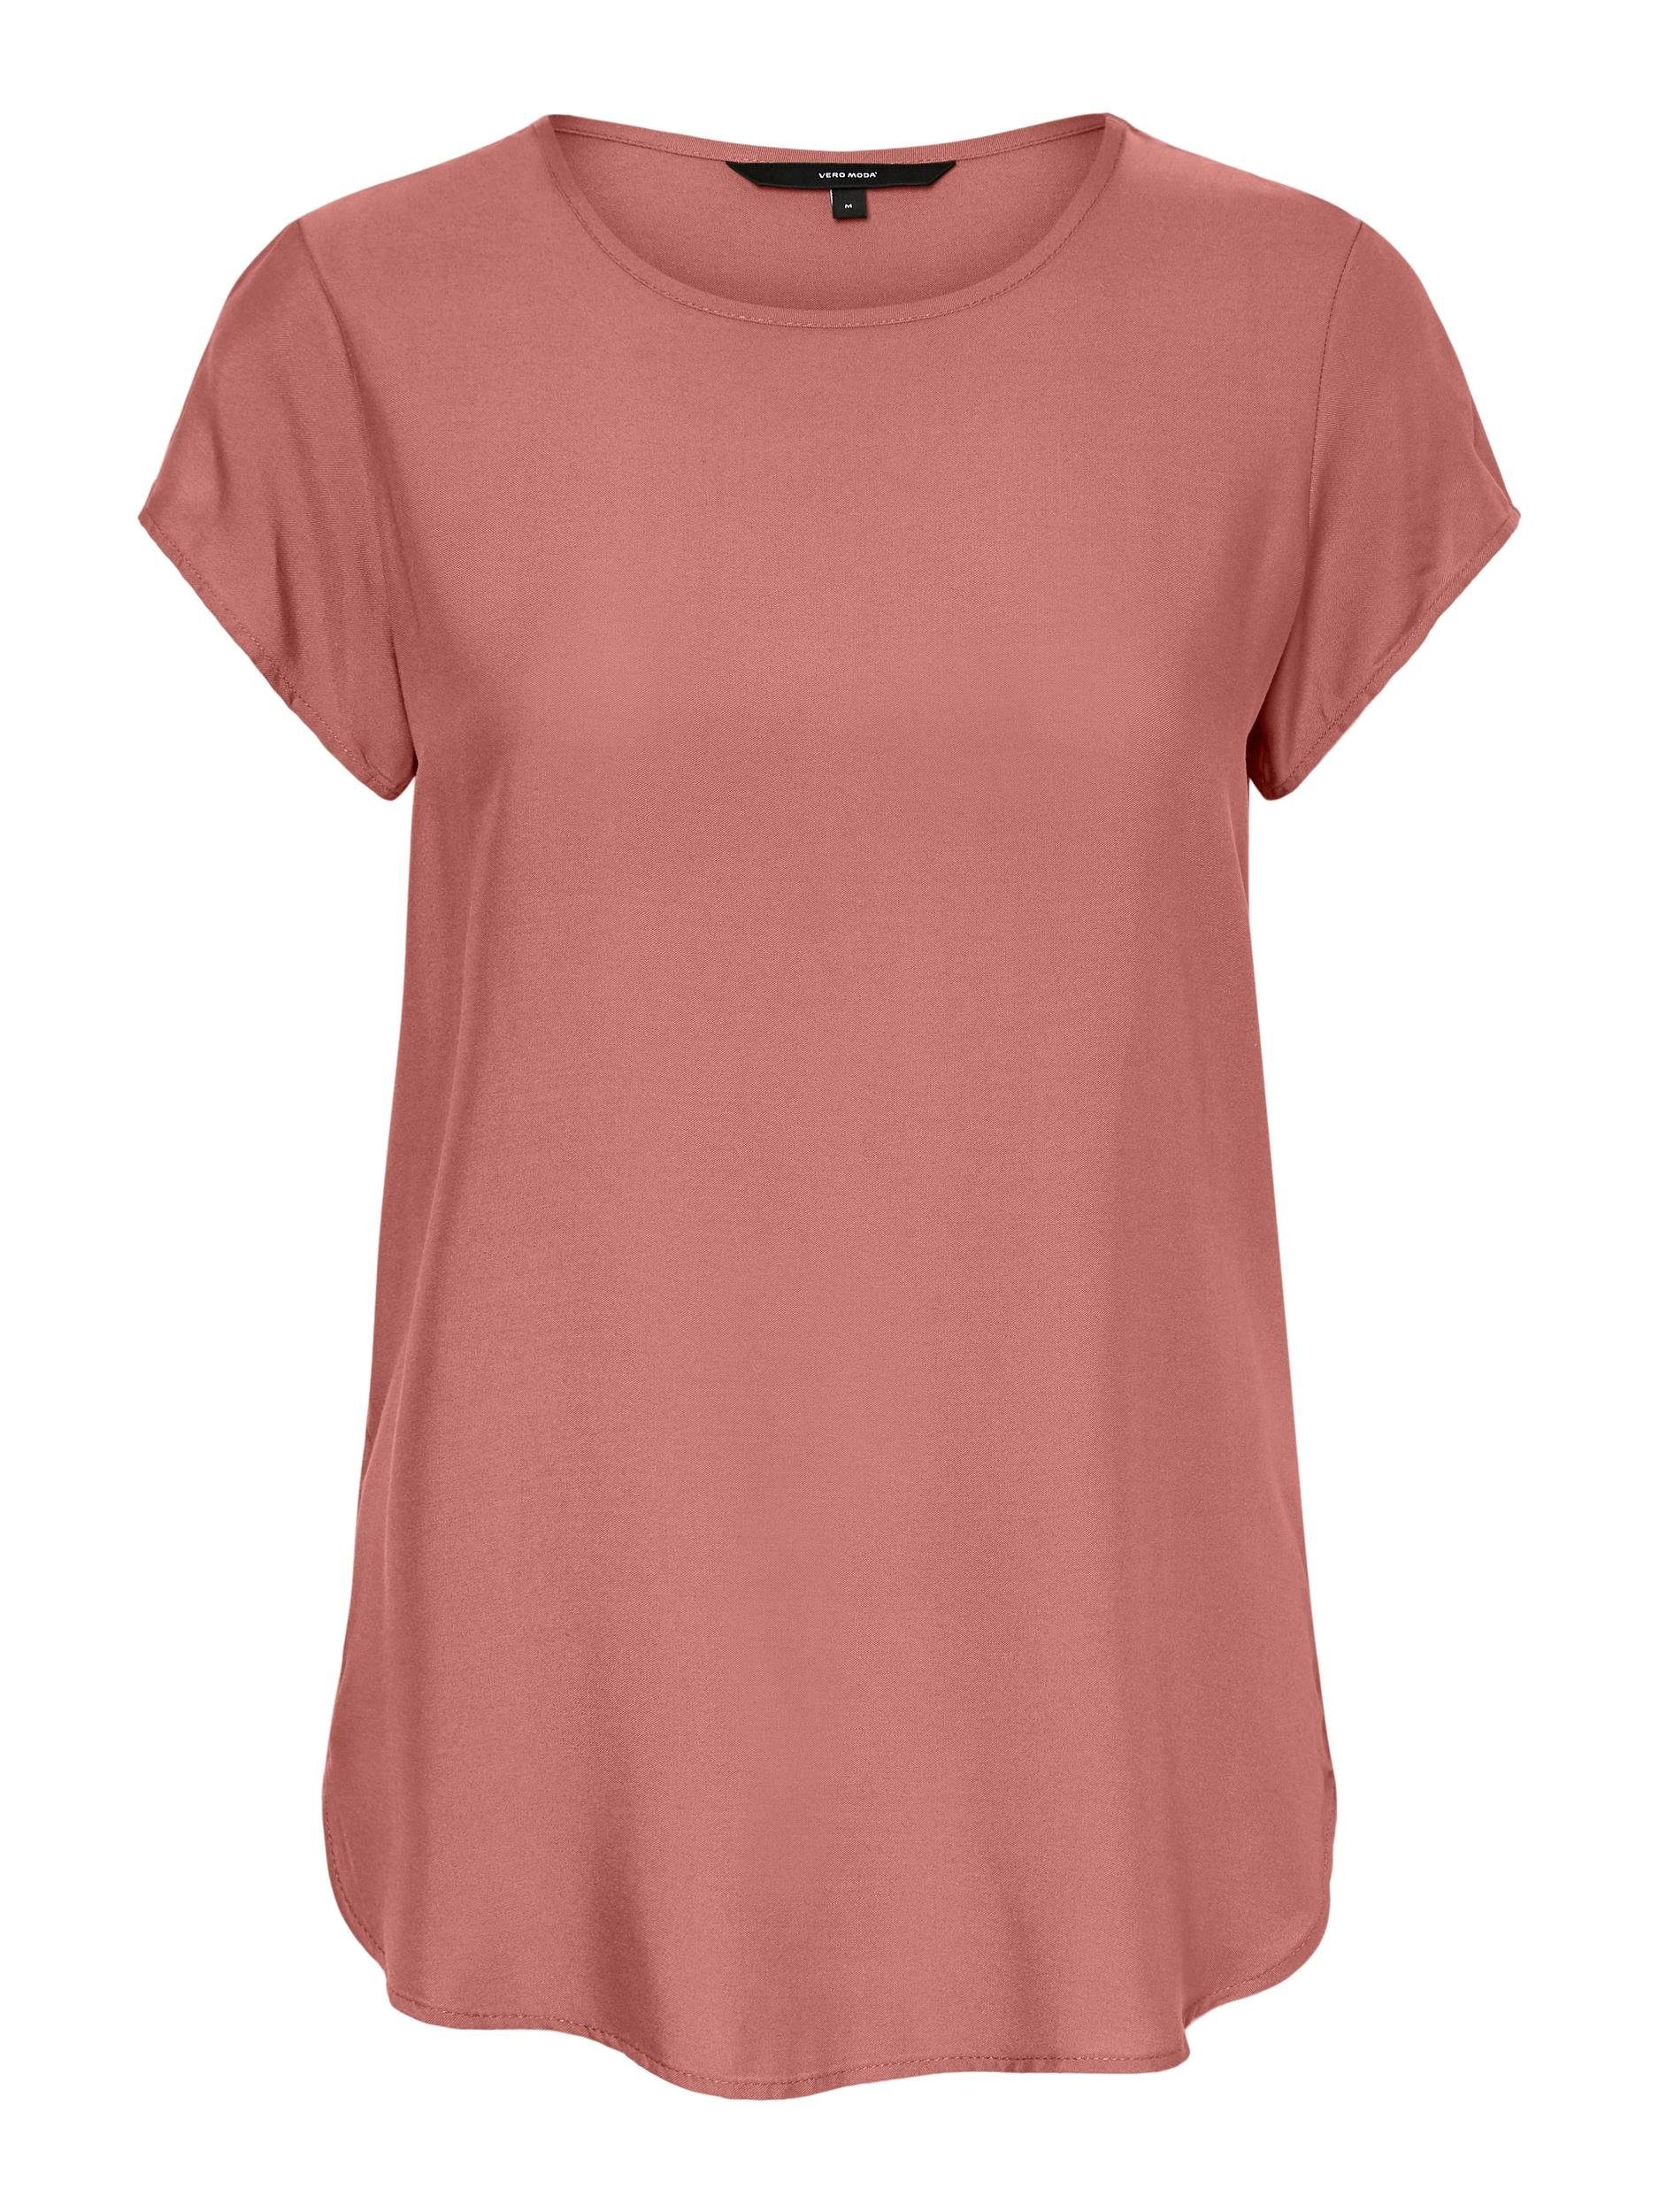 Vero Moda T-Shirt online kaufen | OTTO